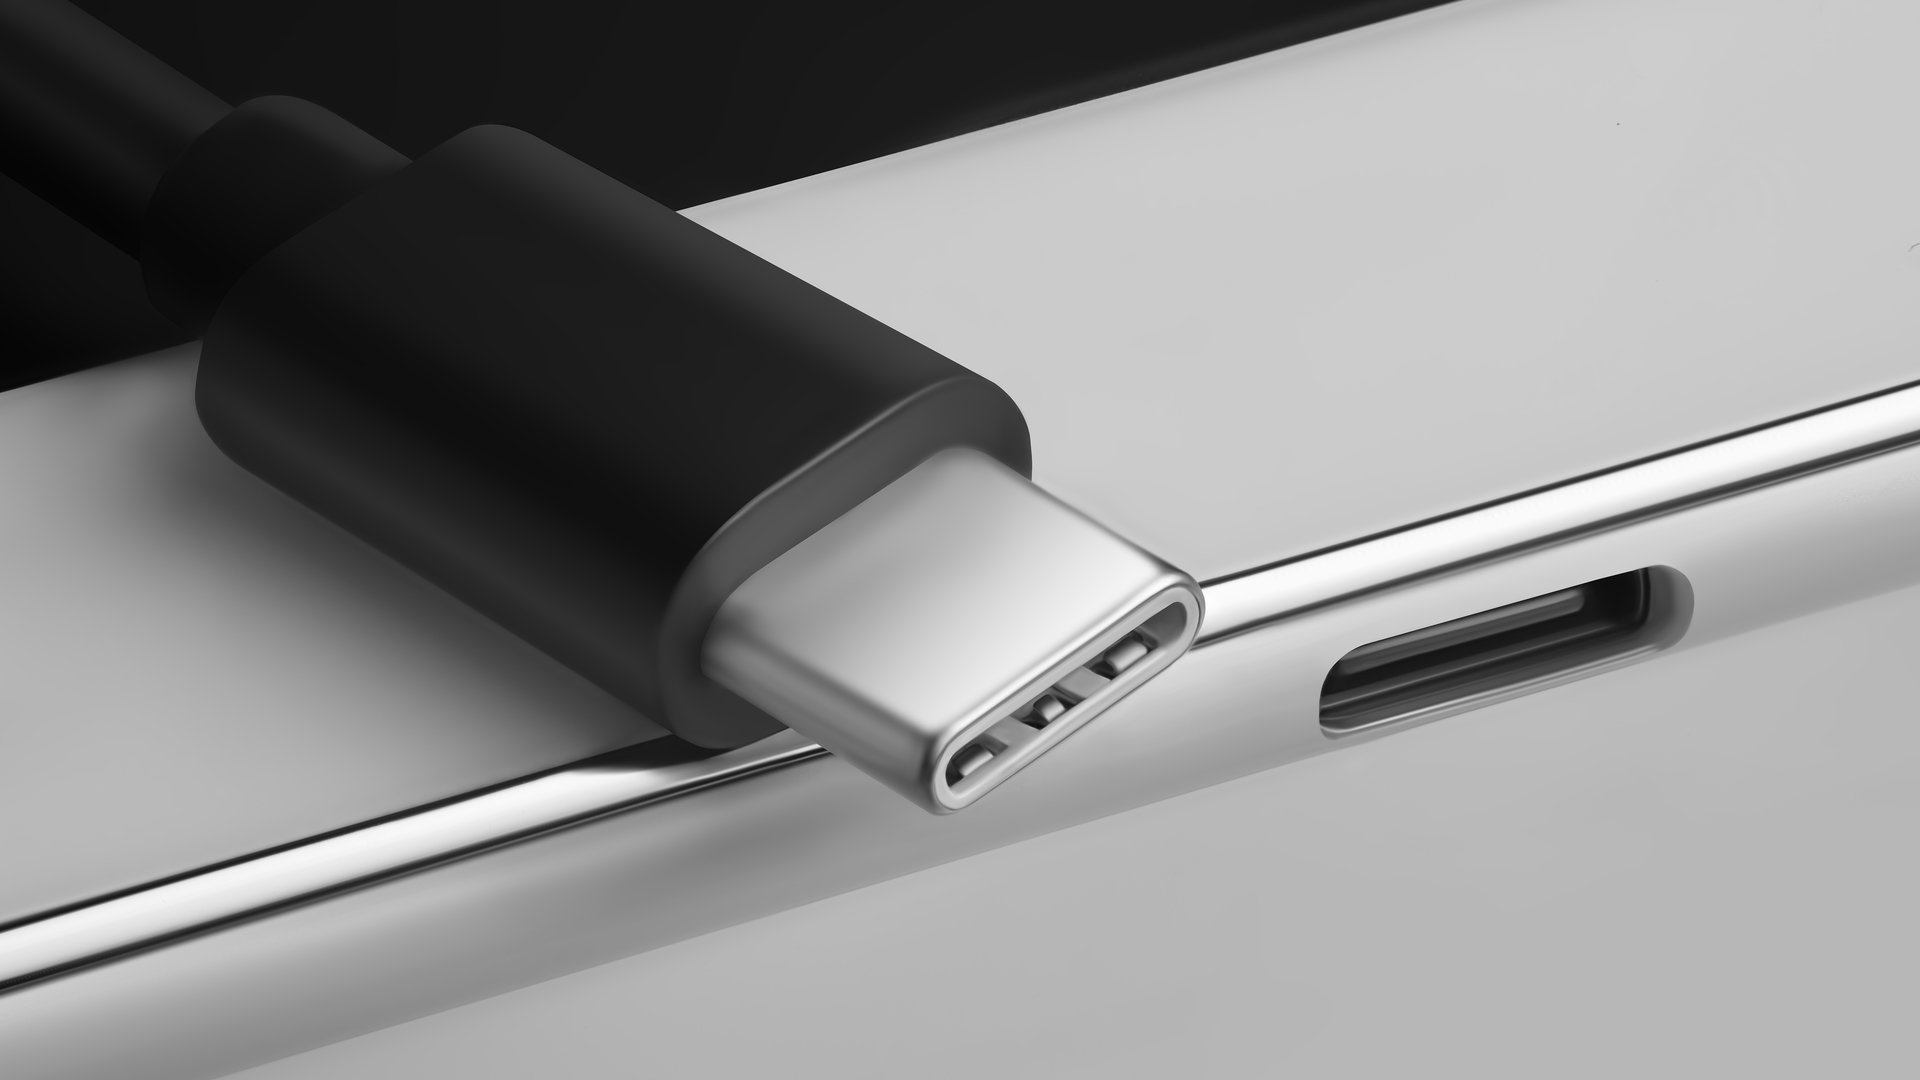 USB C 21 podria cargar nuestras computadoras portatiles y telefonos inteligentes